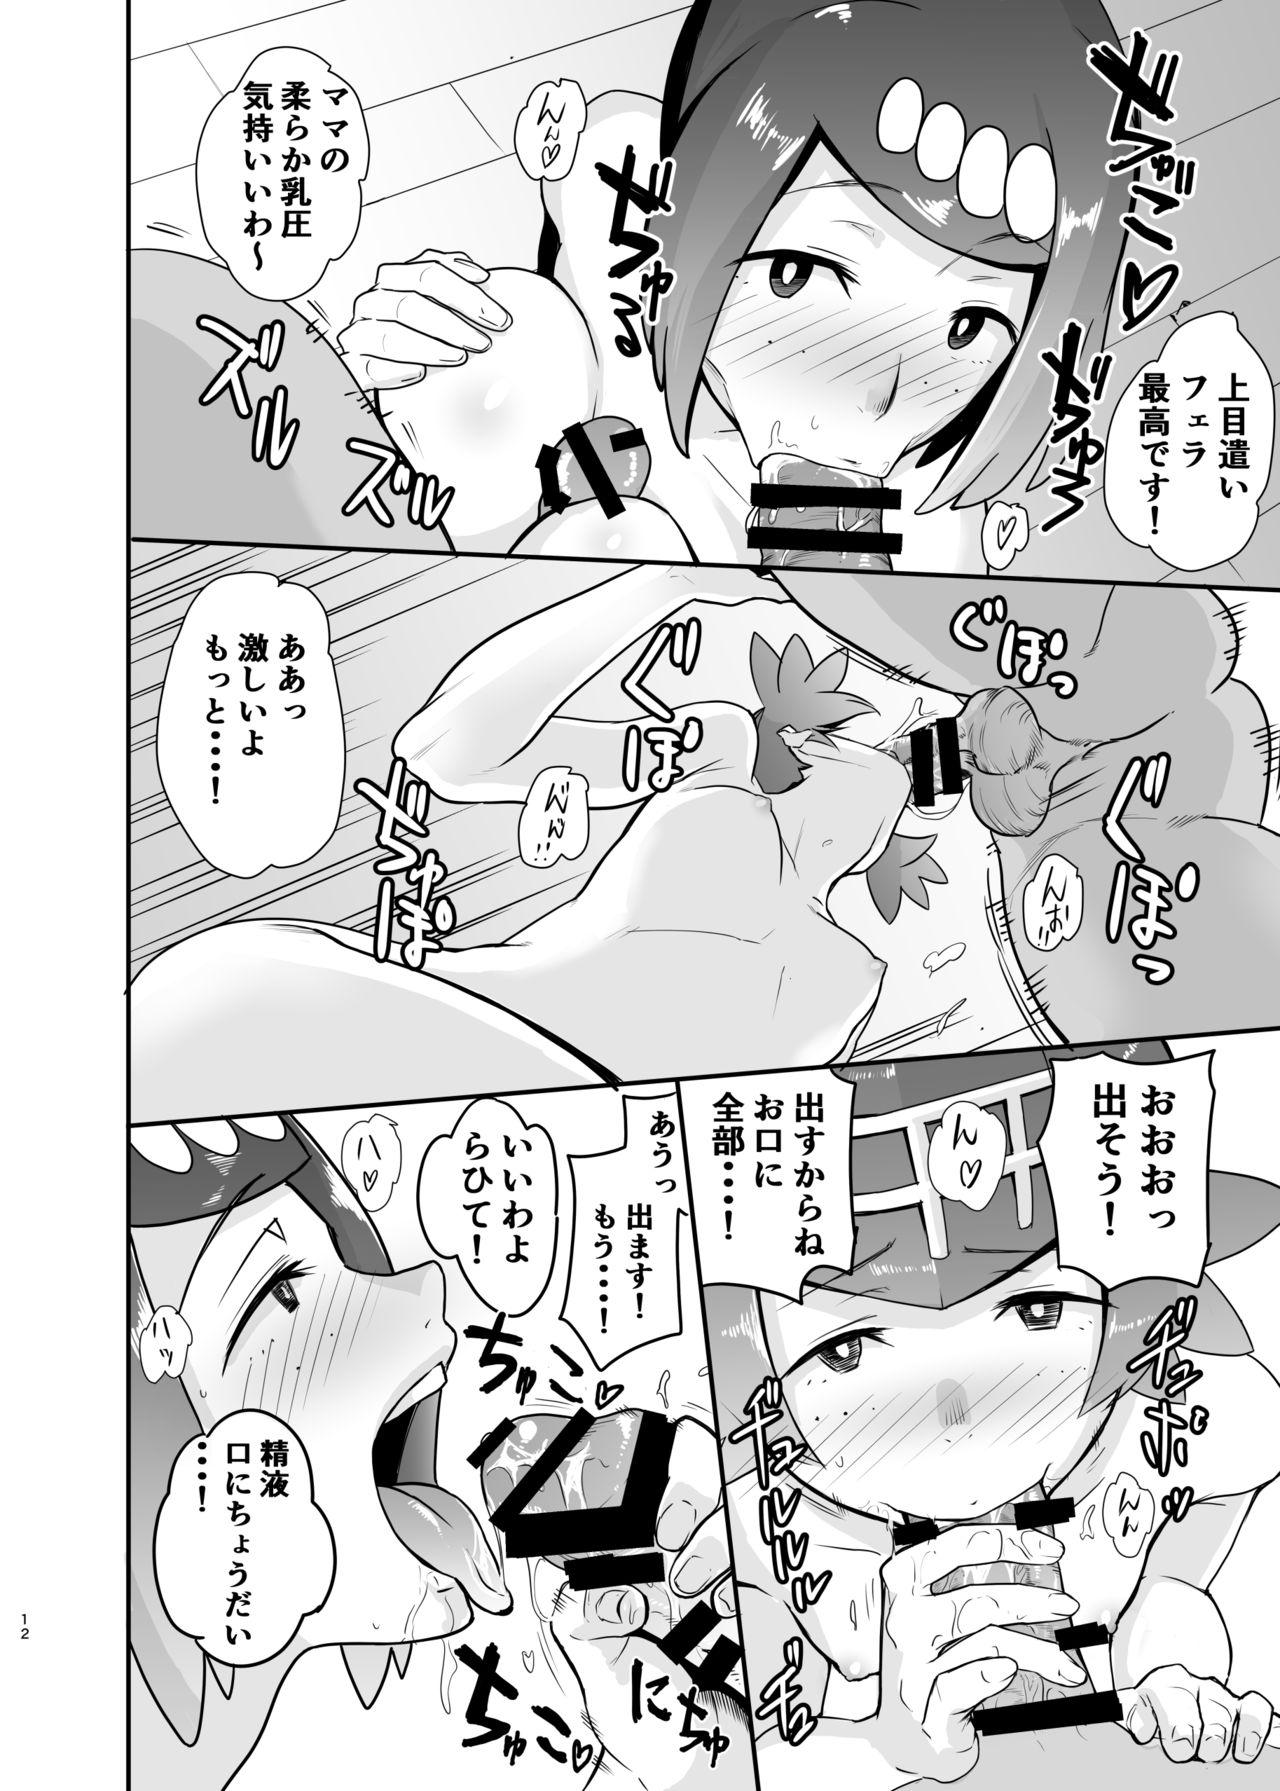 Climax Alola no Yoru no Sugata - Pokemon Rub - Page 11